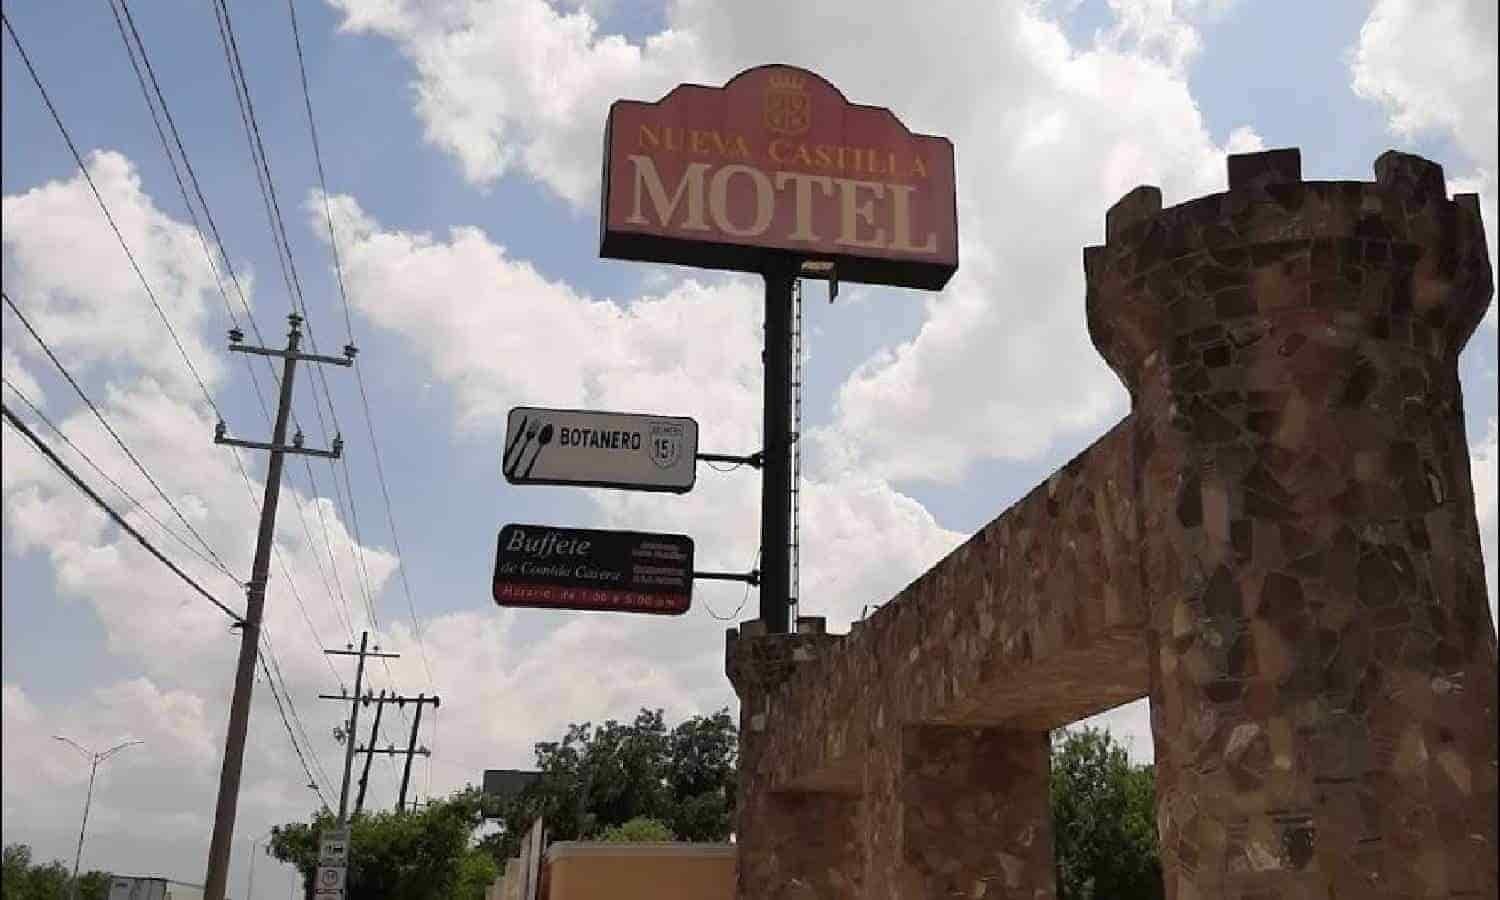 Exclusiva: Dueño de motel Nueva Castilla es un español